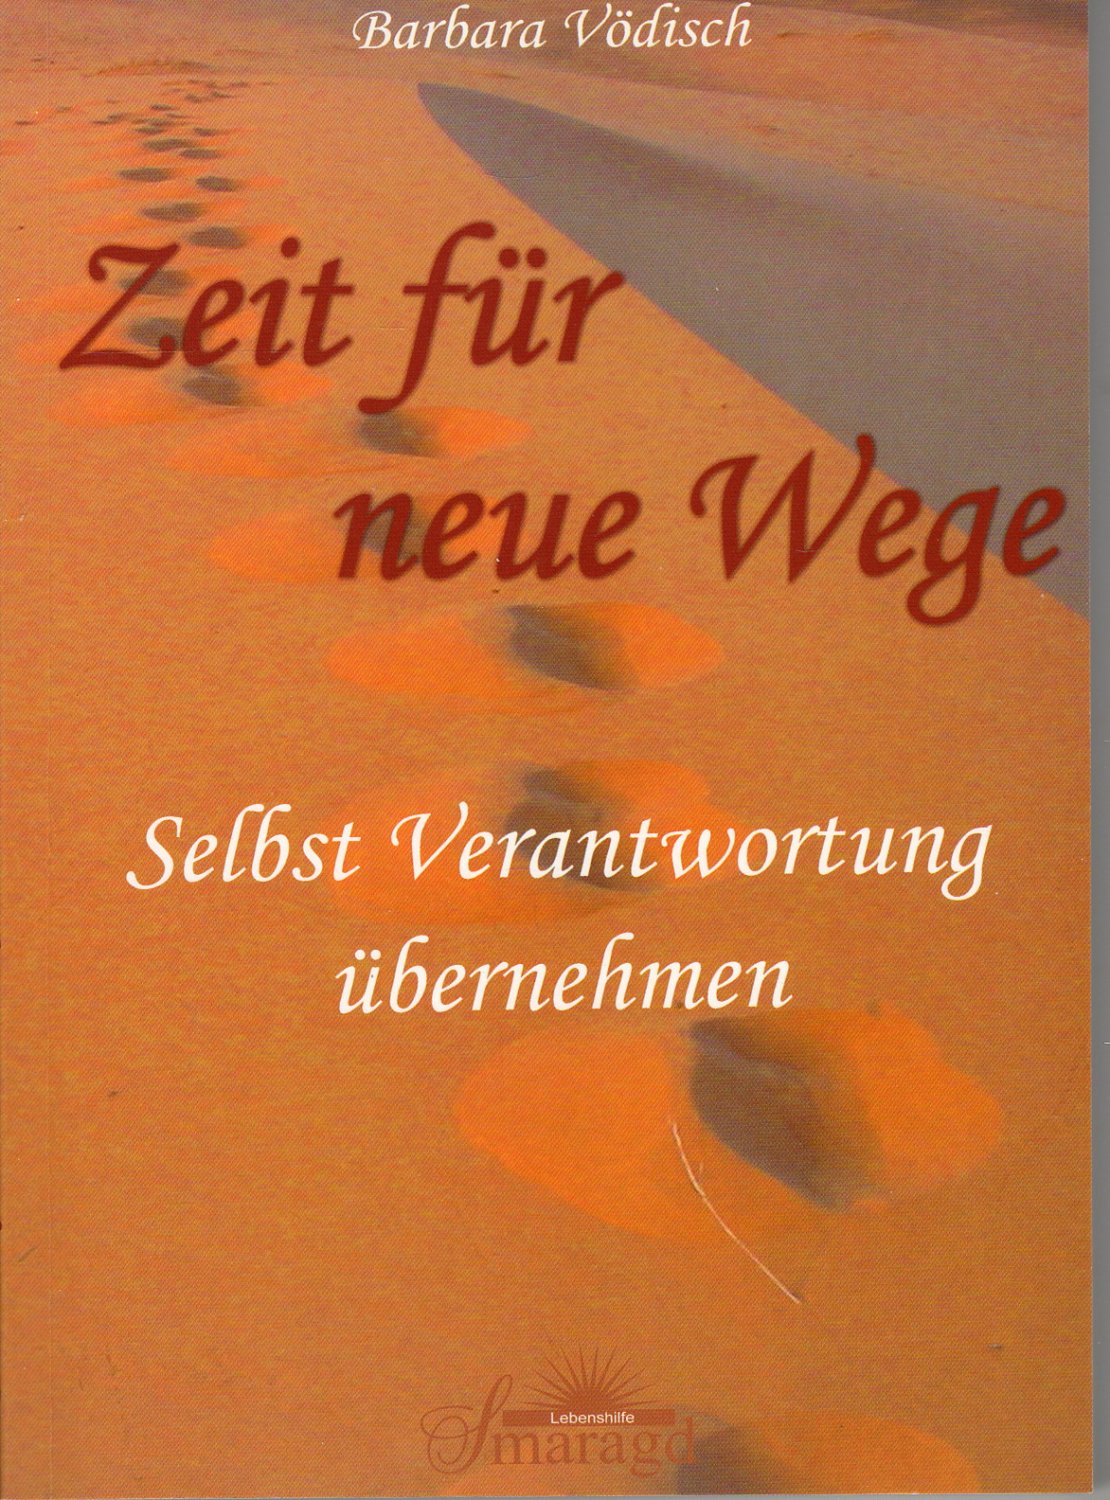 Zeit Fur Neue Wege Barbara Vodisch Buch Erstausgabe Kaufen A00q05ph01zzy